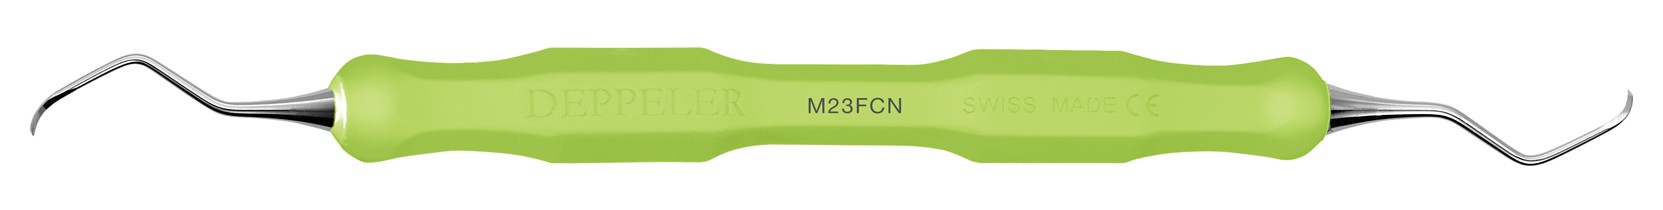 Scaler M23F